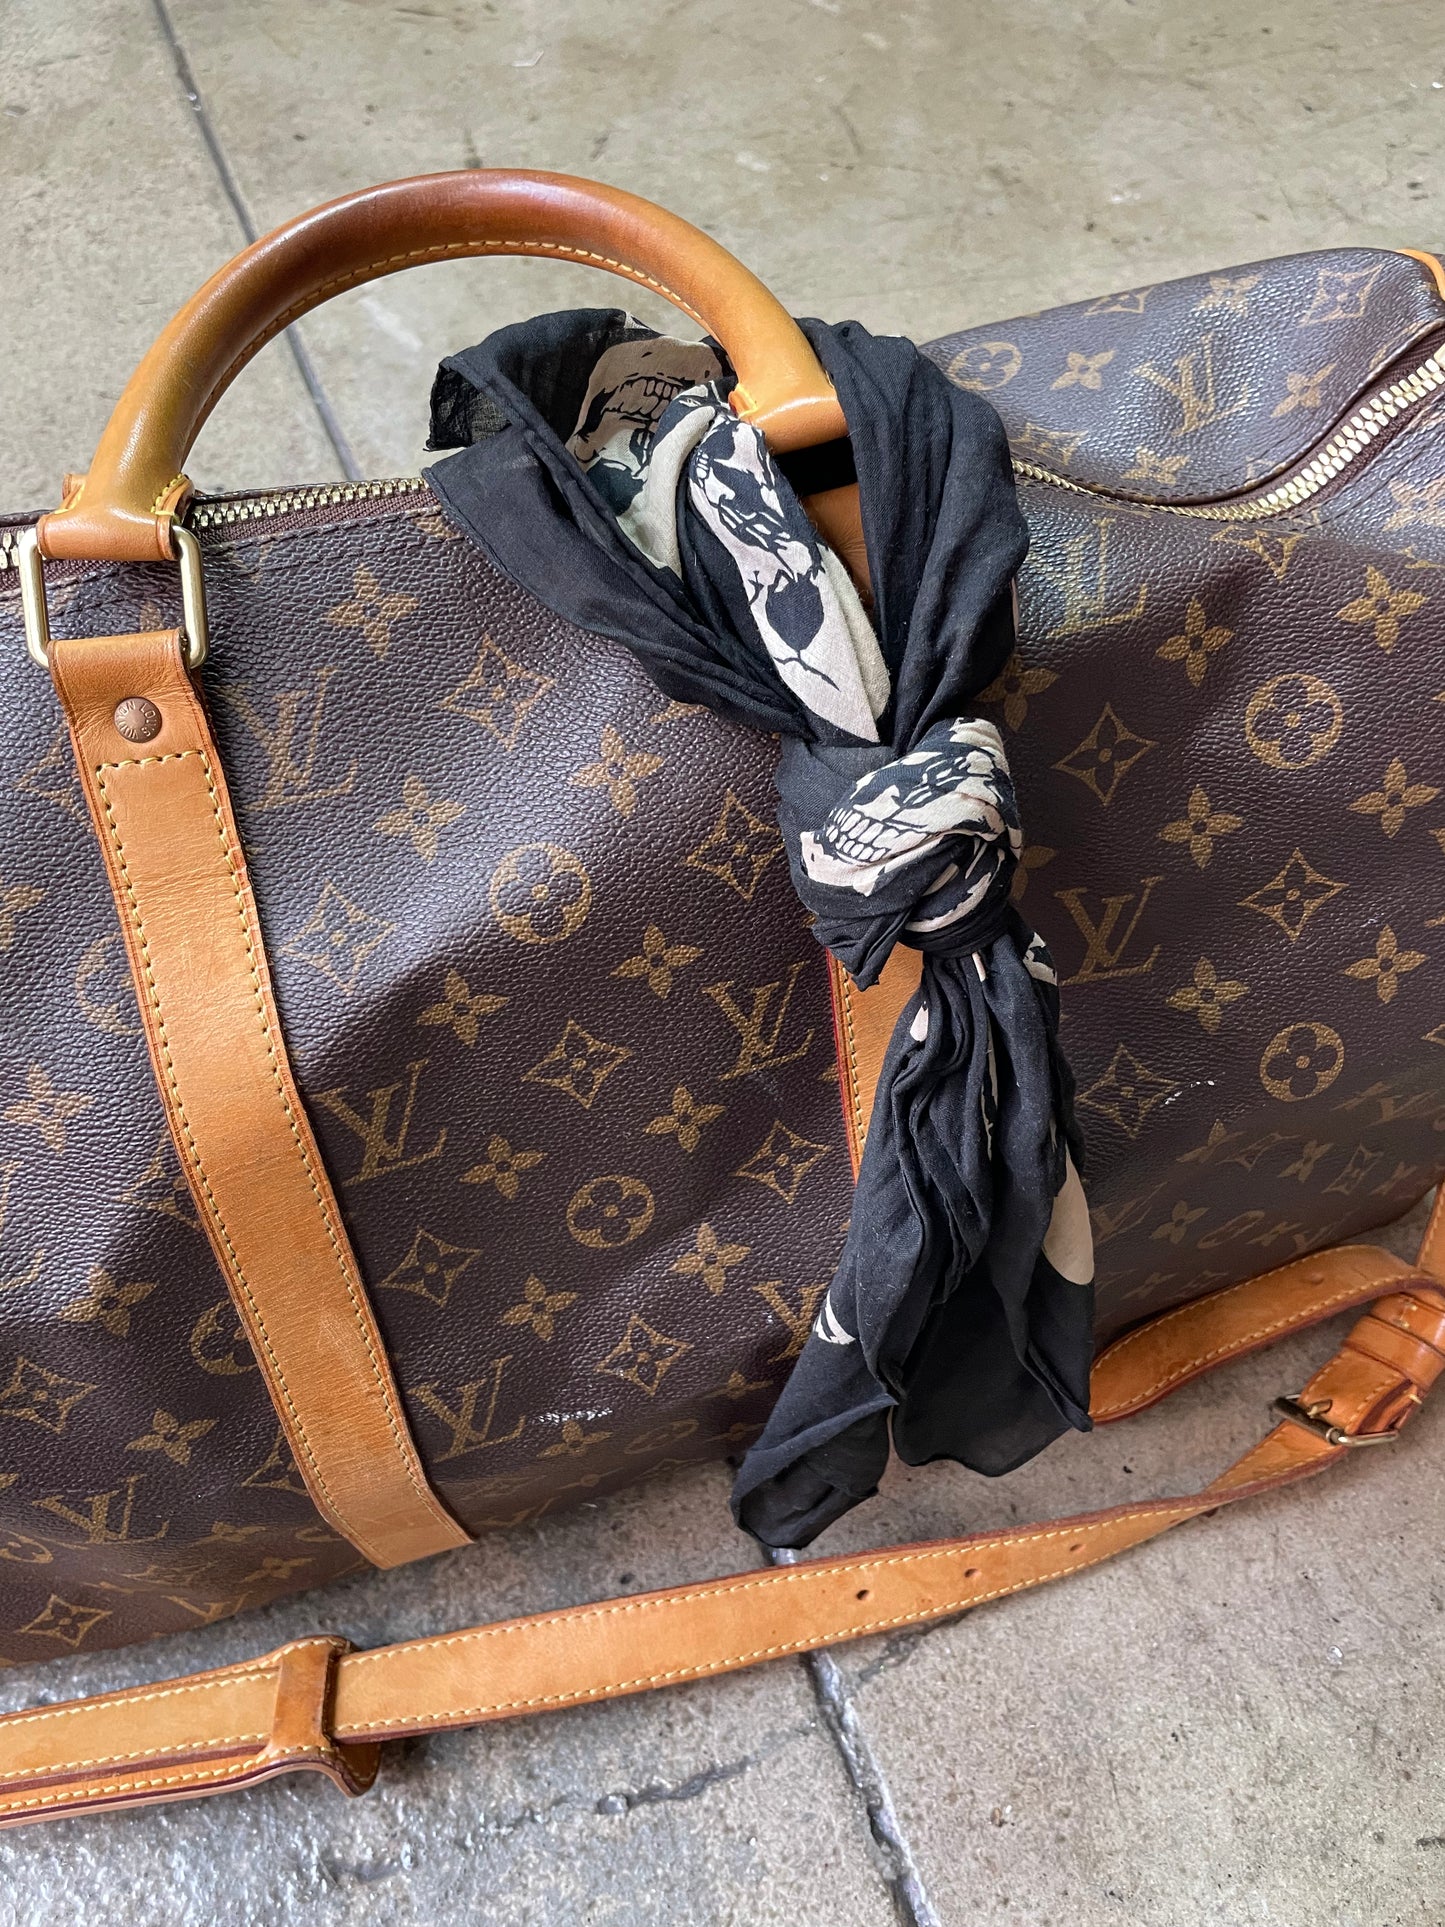 Louis Vuitton Duffle Bag Mid Size with Saint Laurent bandana